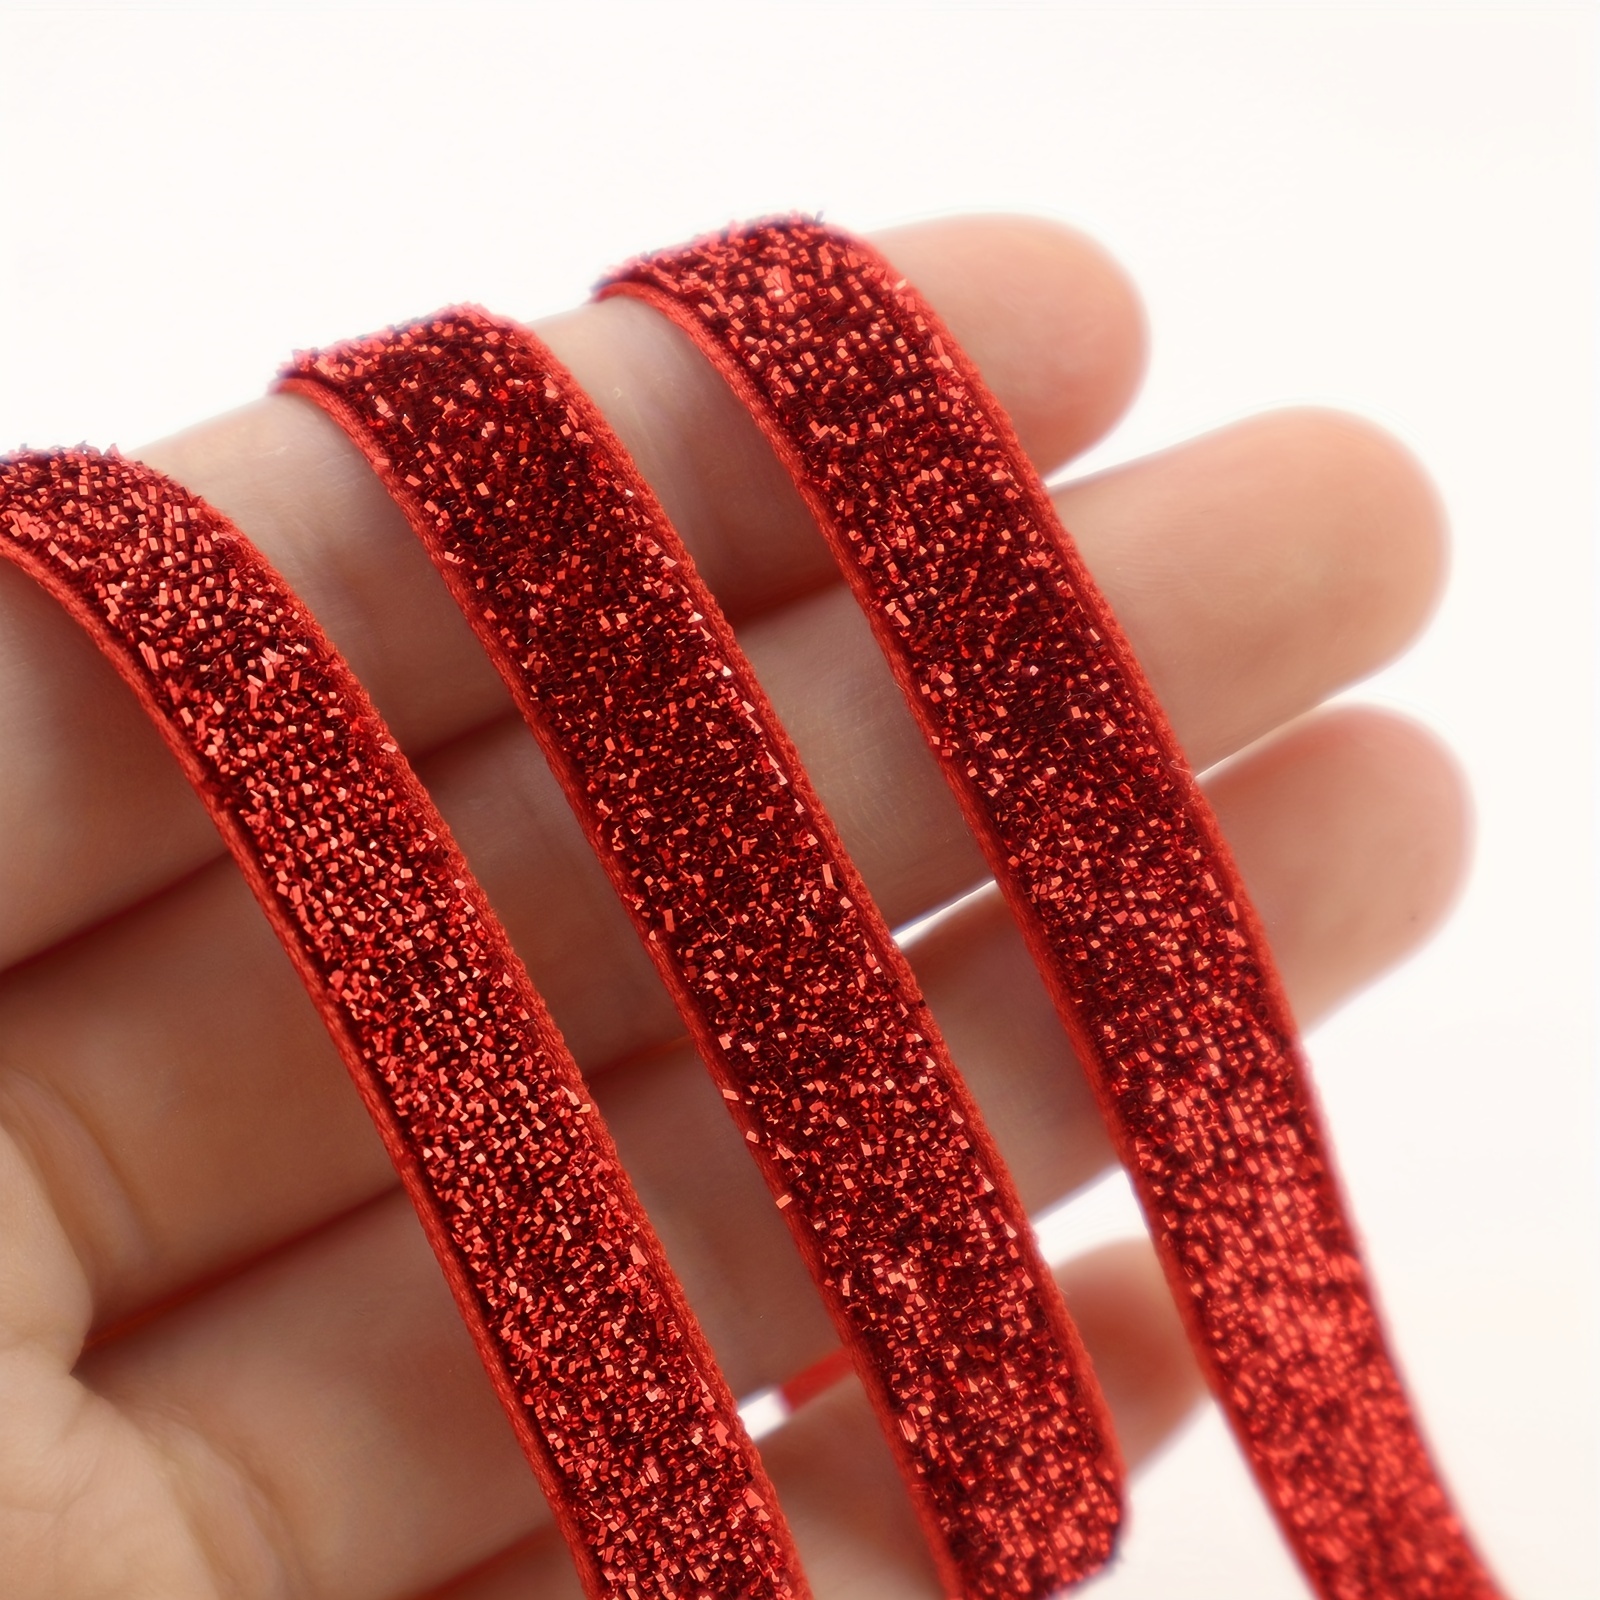 New Trend Product Colorful Metallic Glitter Velvet Ribbons for